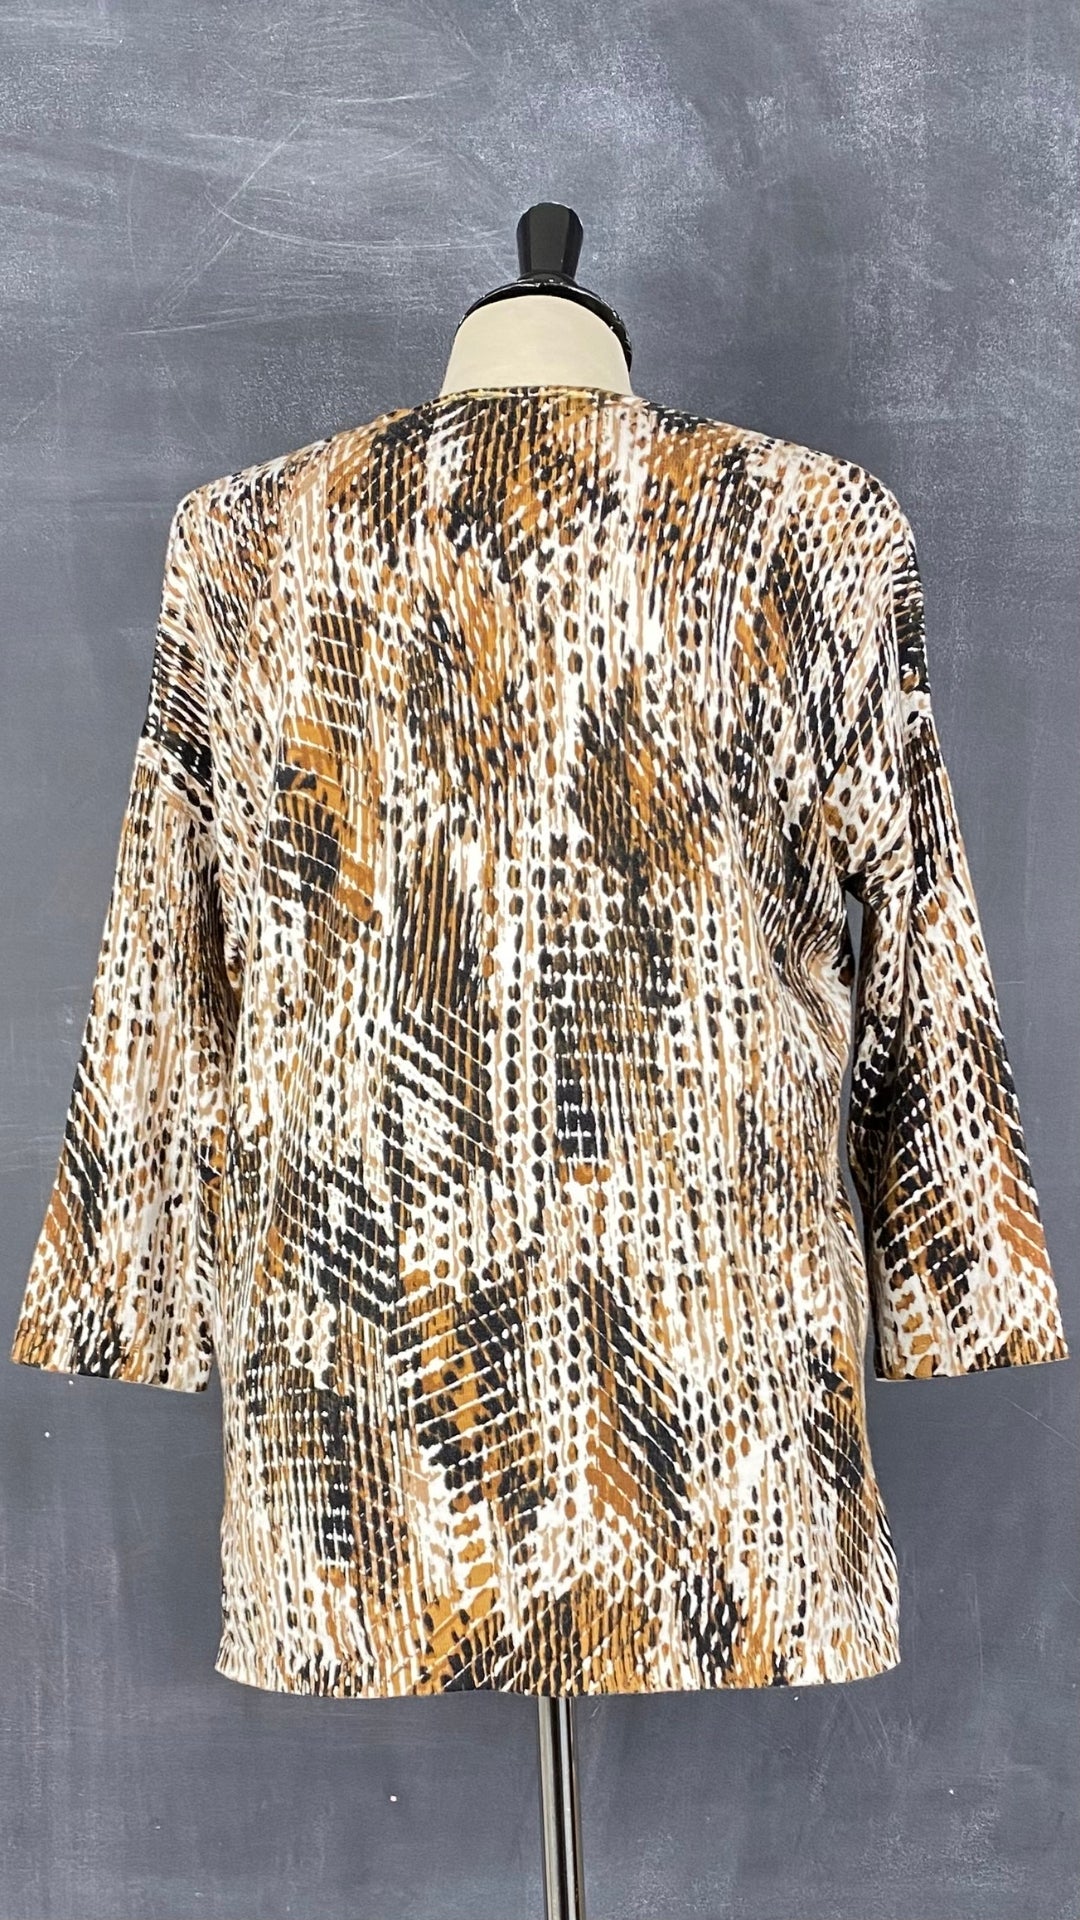 Chandail tricot col v motif style léopard Olsen, taille s/m. Vue de dos.